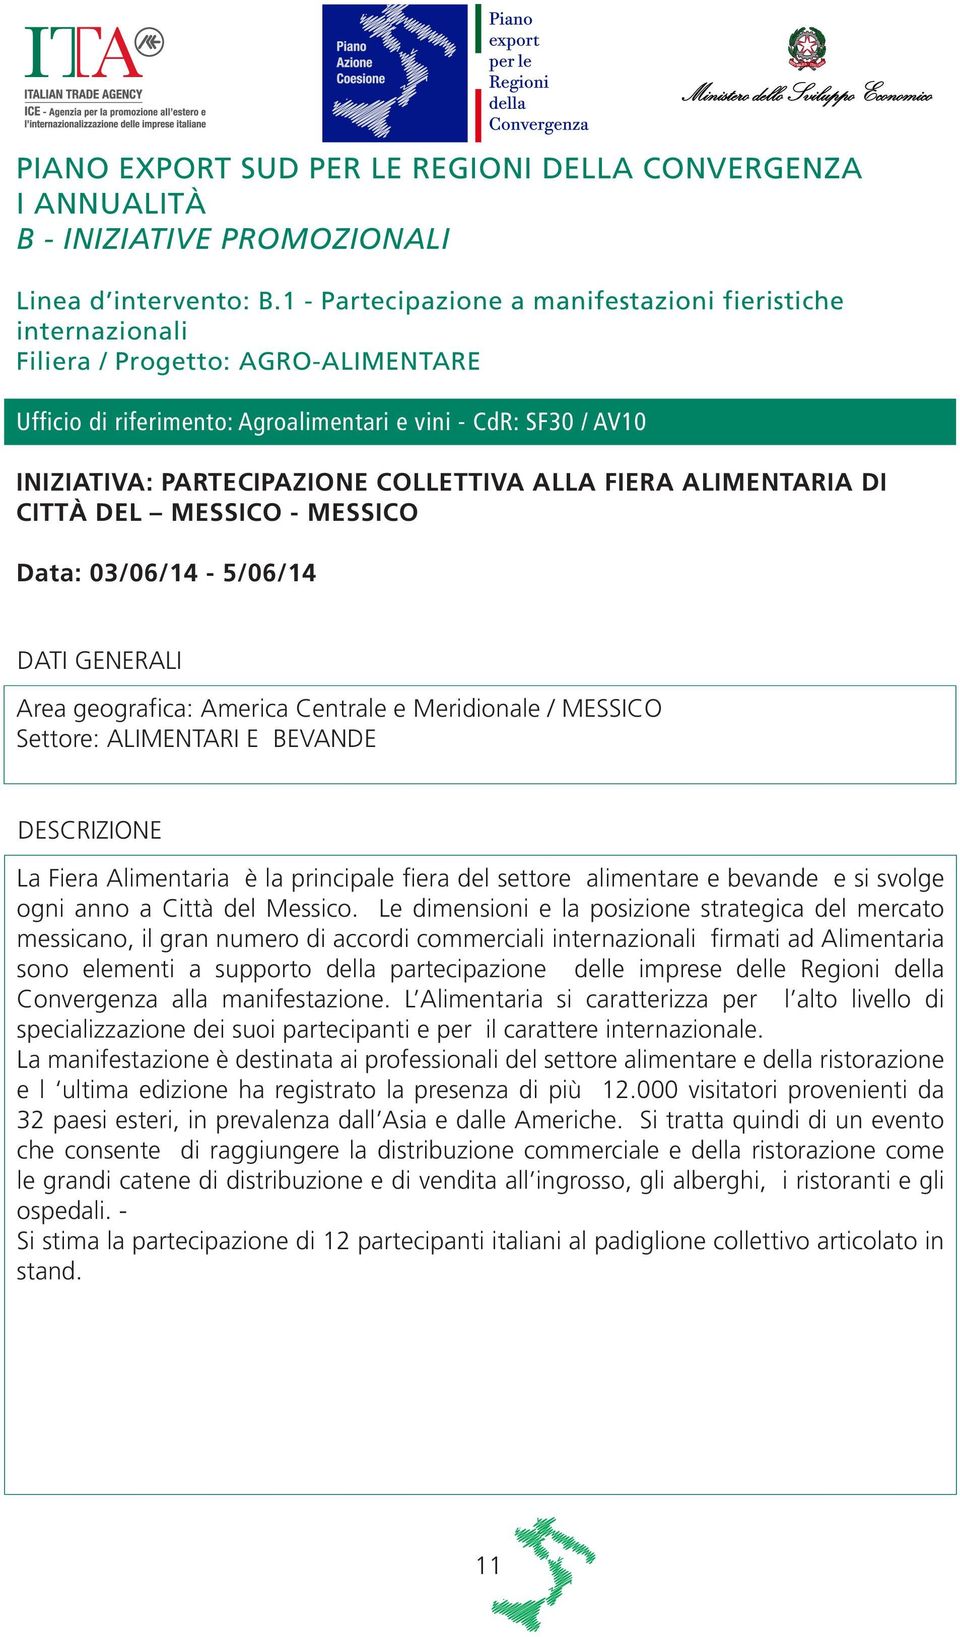 COLLETTIVA ALLA FIERA ALIMENTARIA DI CITTÀ DEL MESSICO - MESSICO Data: 03/06/14-5/06/14 Area geografica: America Centrale e Meridionale / MESSICO Settore: ALIMENTARI E BEVANDE La Fiera Alimentaria è